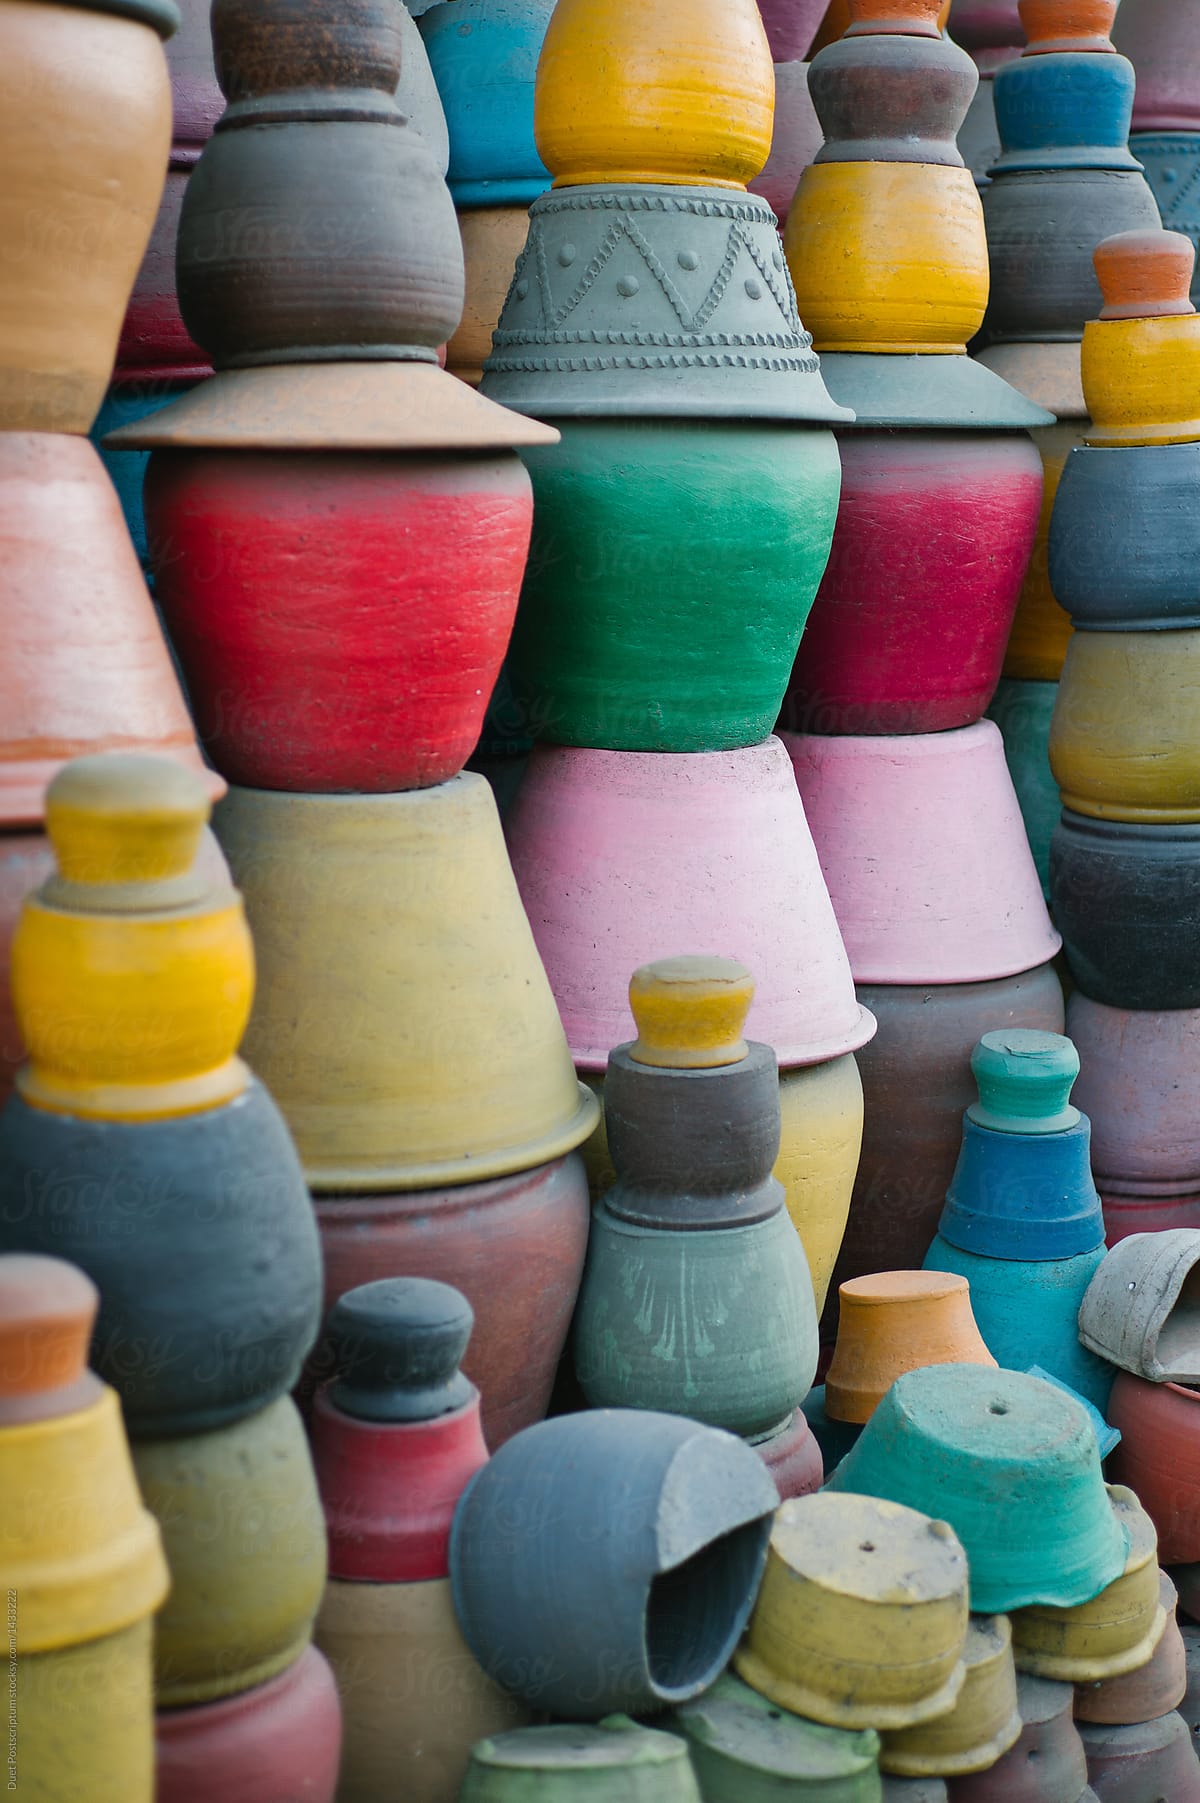 Clay pots in rows